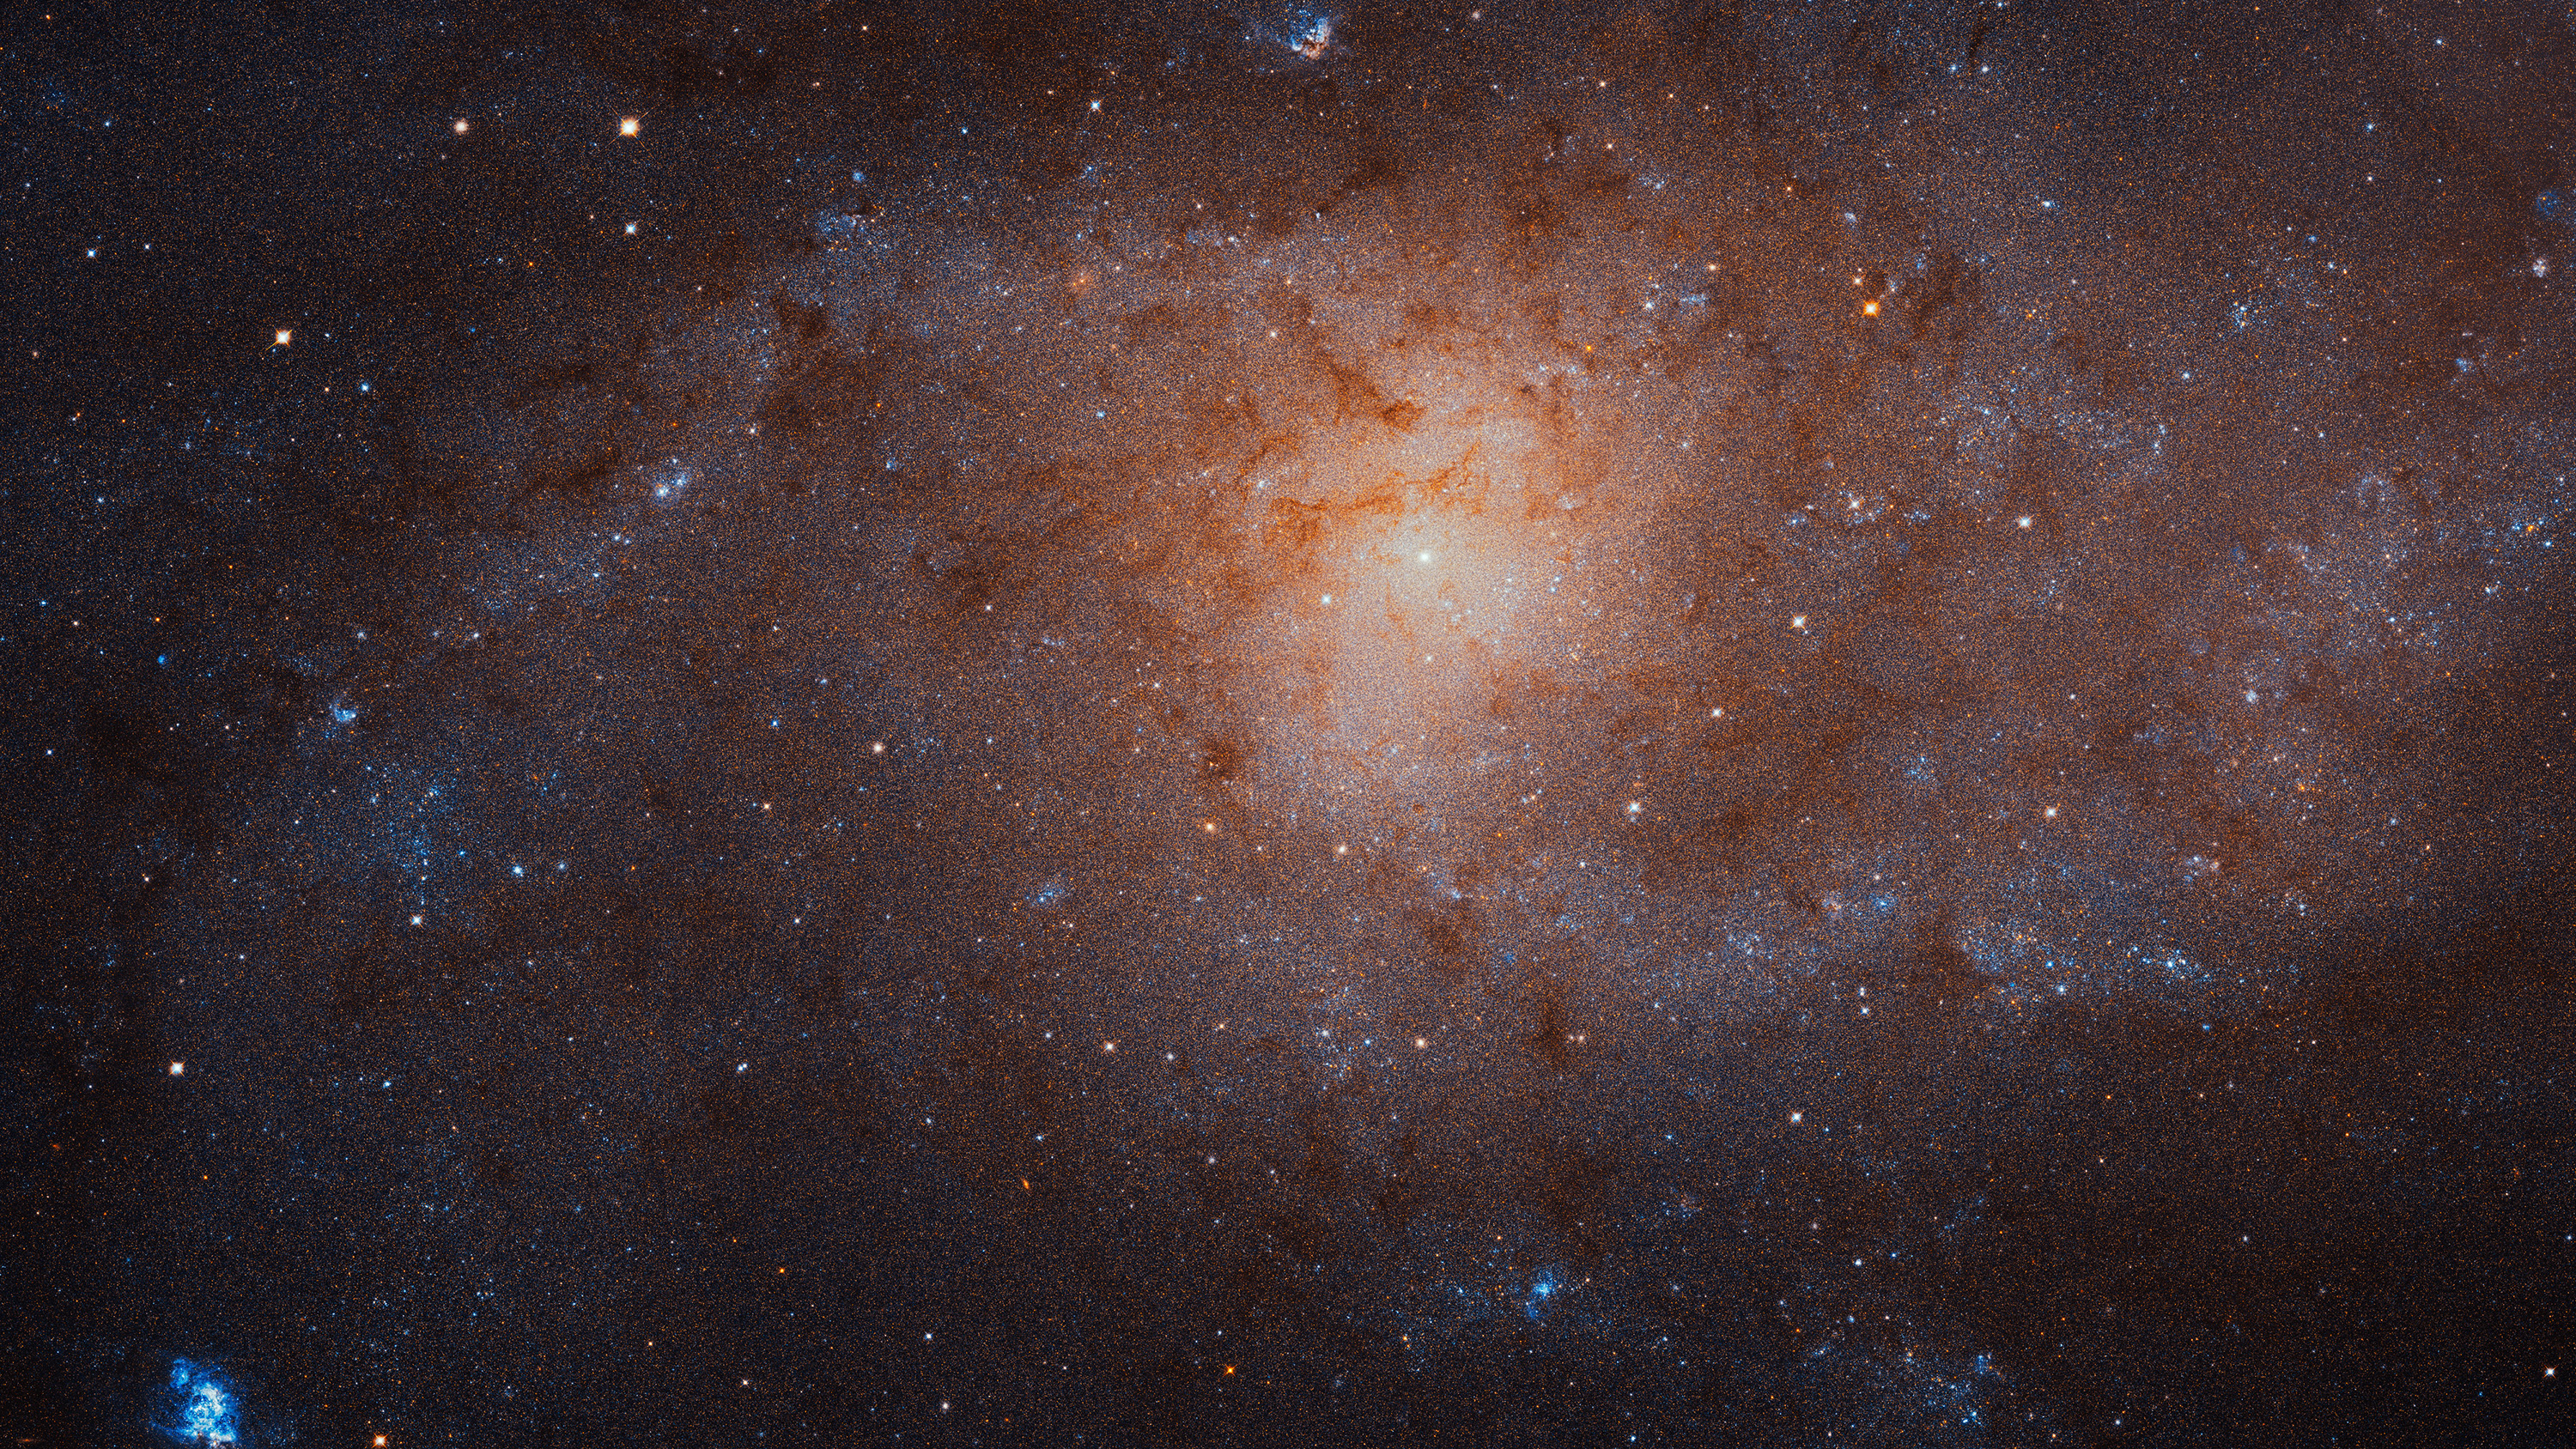 Галактика М33 была среди шести звёздных систем, рассмотренных авторами работы.